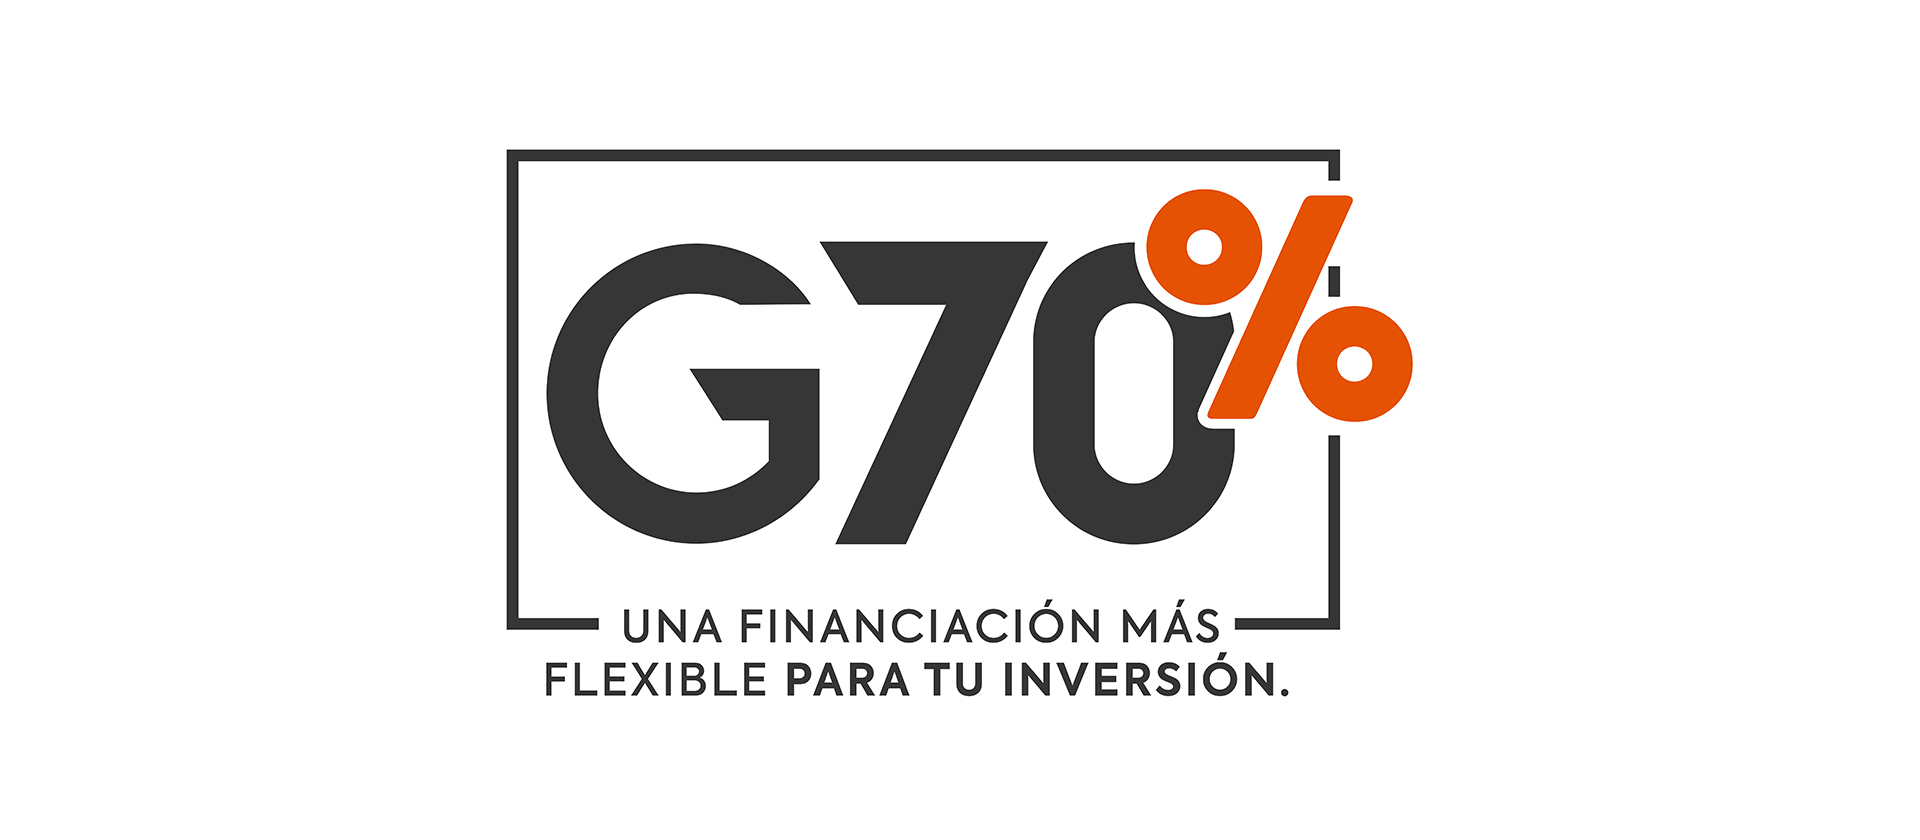 G70% Una financiación más flexible para tu inversión